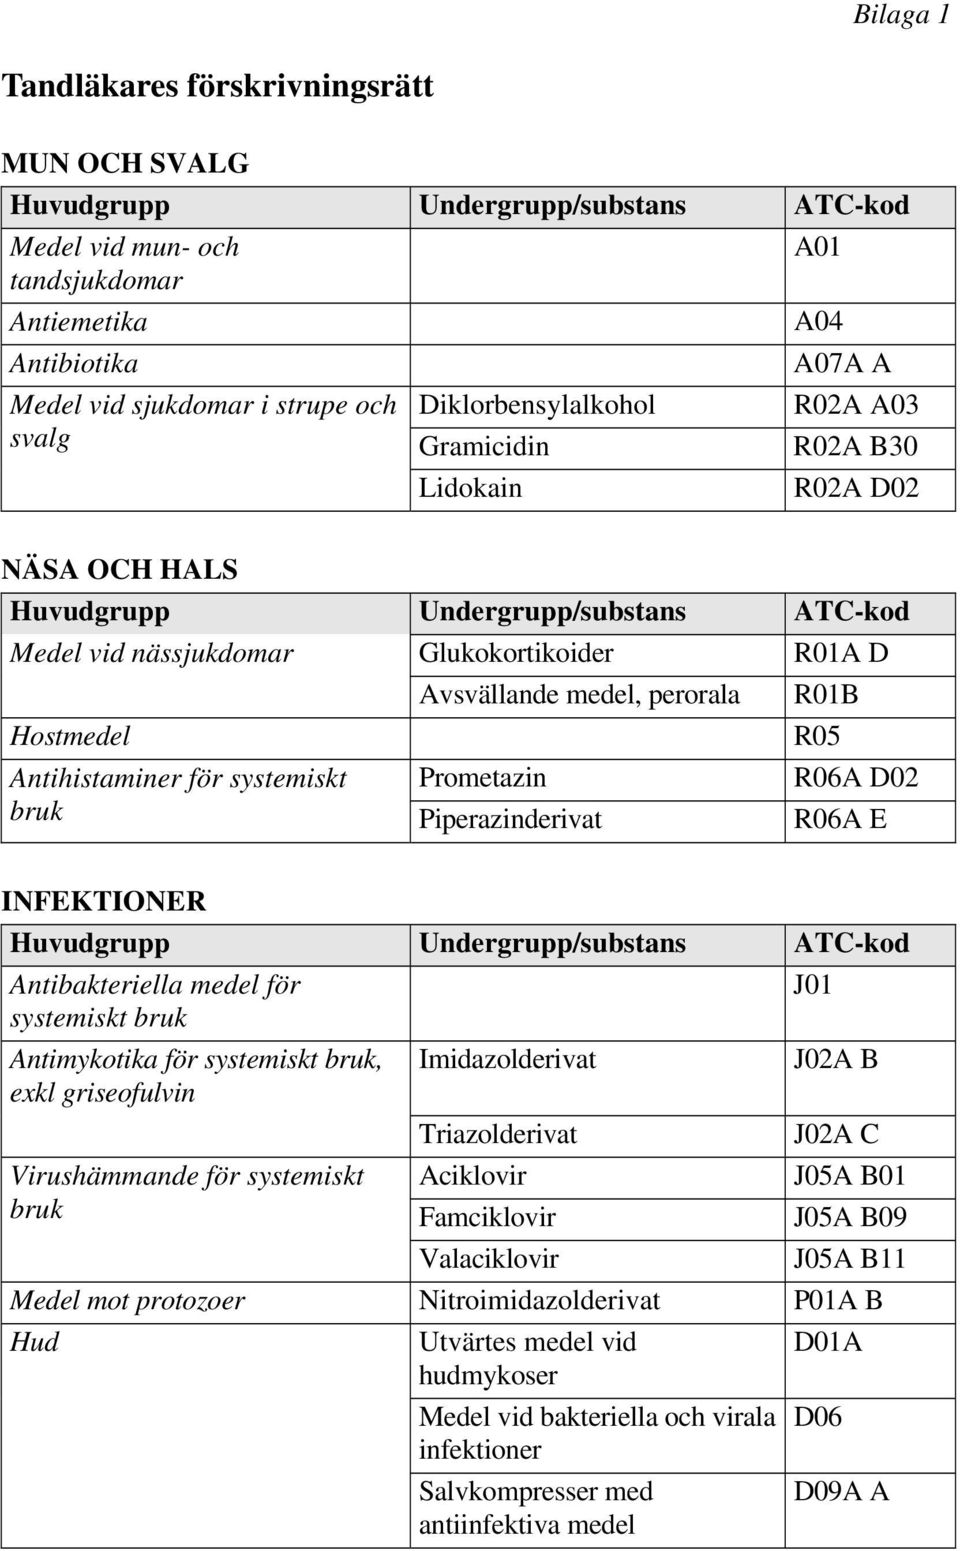 perorala R01B Hostmedel R05 Antihistaminer för systemiskt Prometazin R06A D02 bruk Piperazinderivat R06A E INFEKTIONER Huvudgrupp Undergrupp/substans ATC-kod Antibakteriella medel för J01 systemiskt